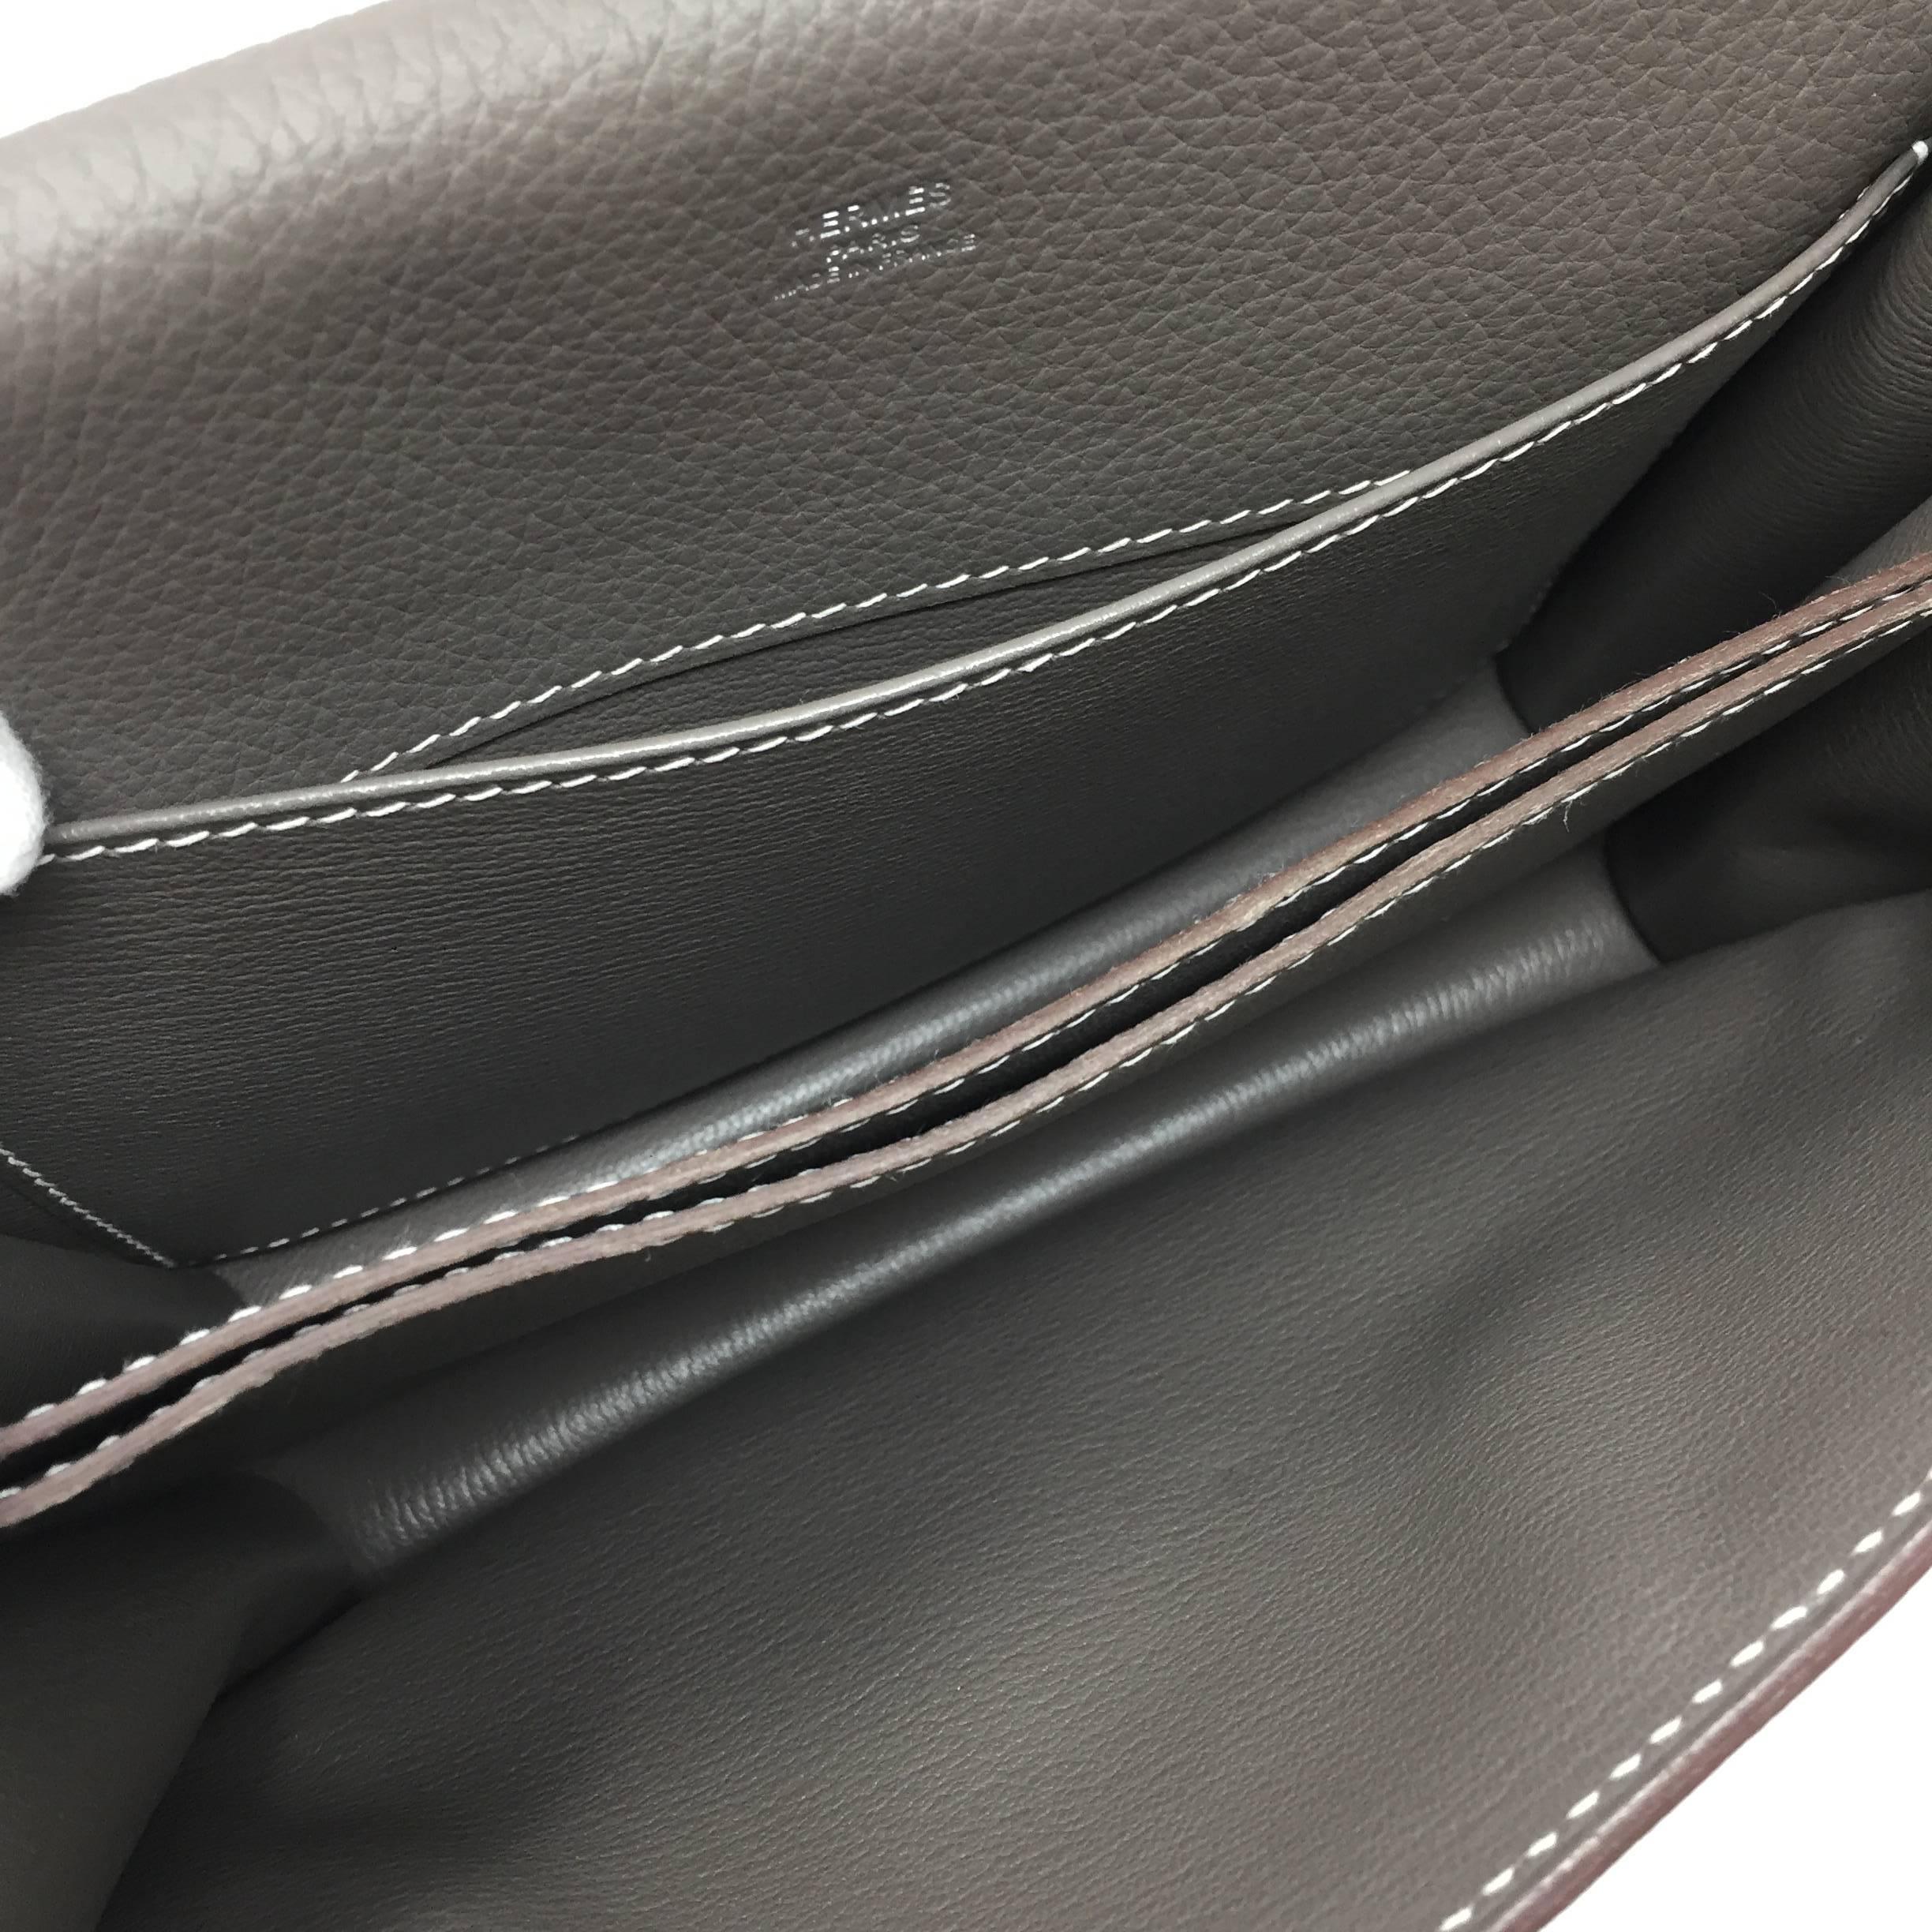 Gray Hermes Paris Taurillon Clemance Sac Roulis Leather Shoulder Bag  , 2011